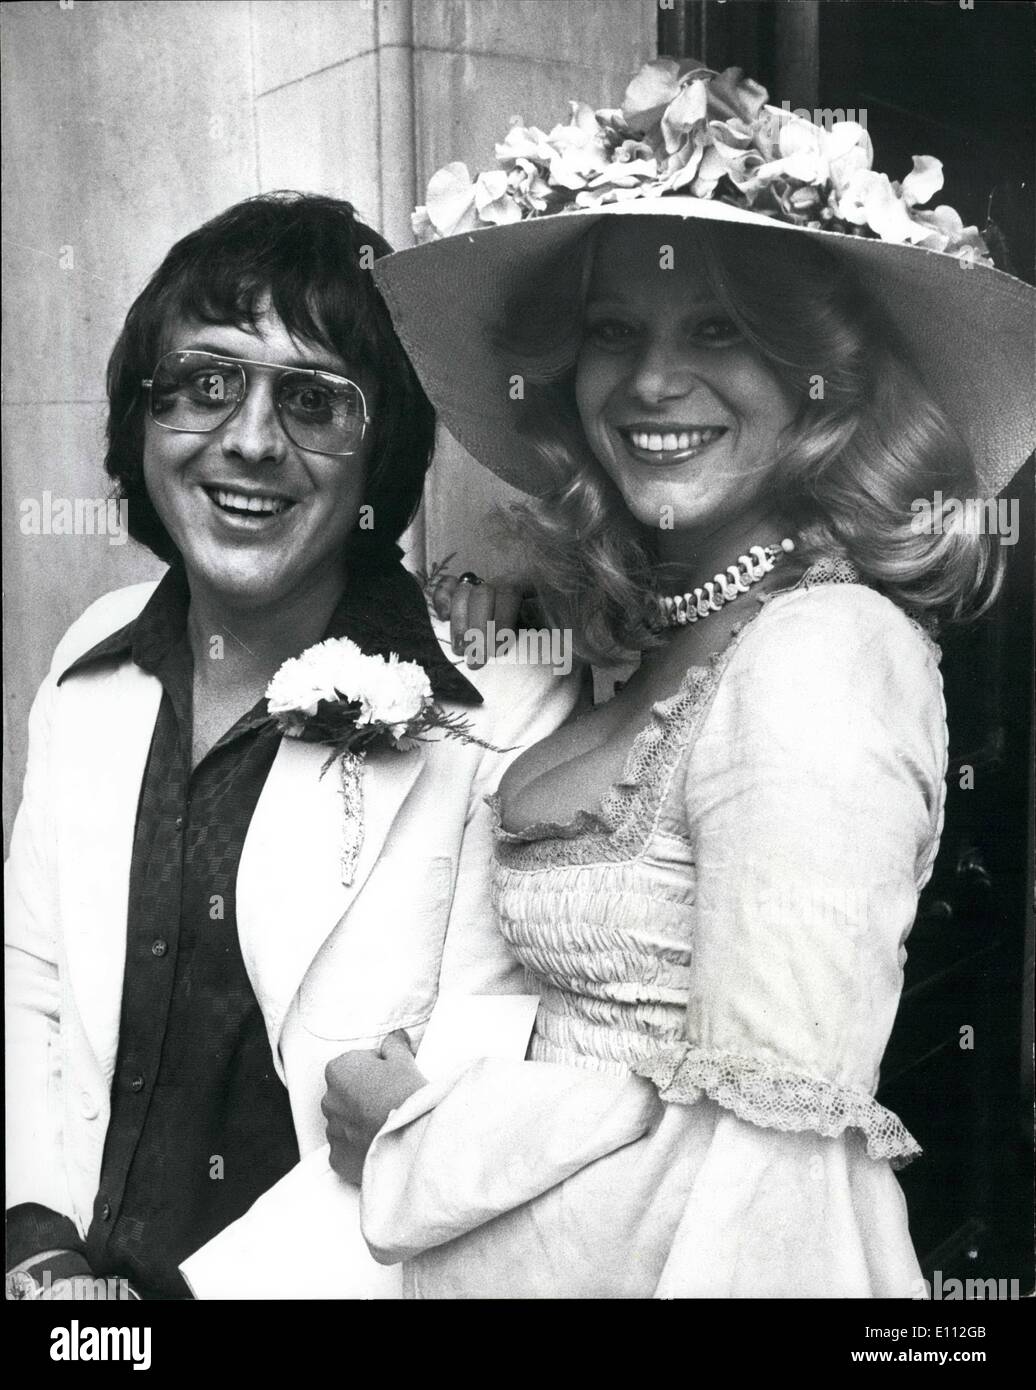 Jun. 06, 1975 - Hairdresser Casanova marries top model. Hairdresser ...